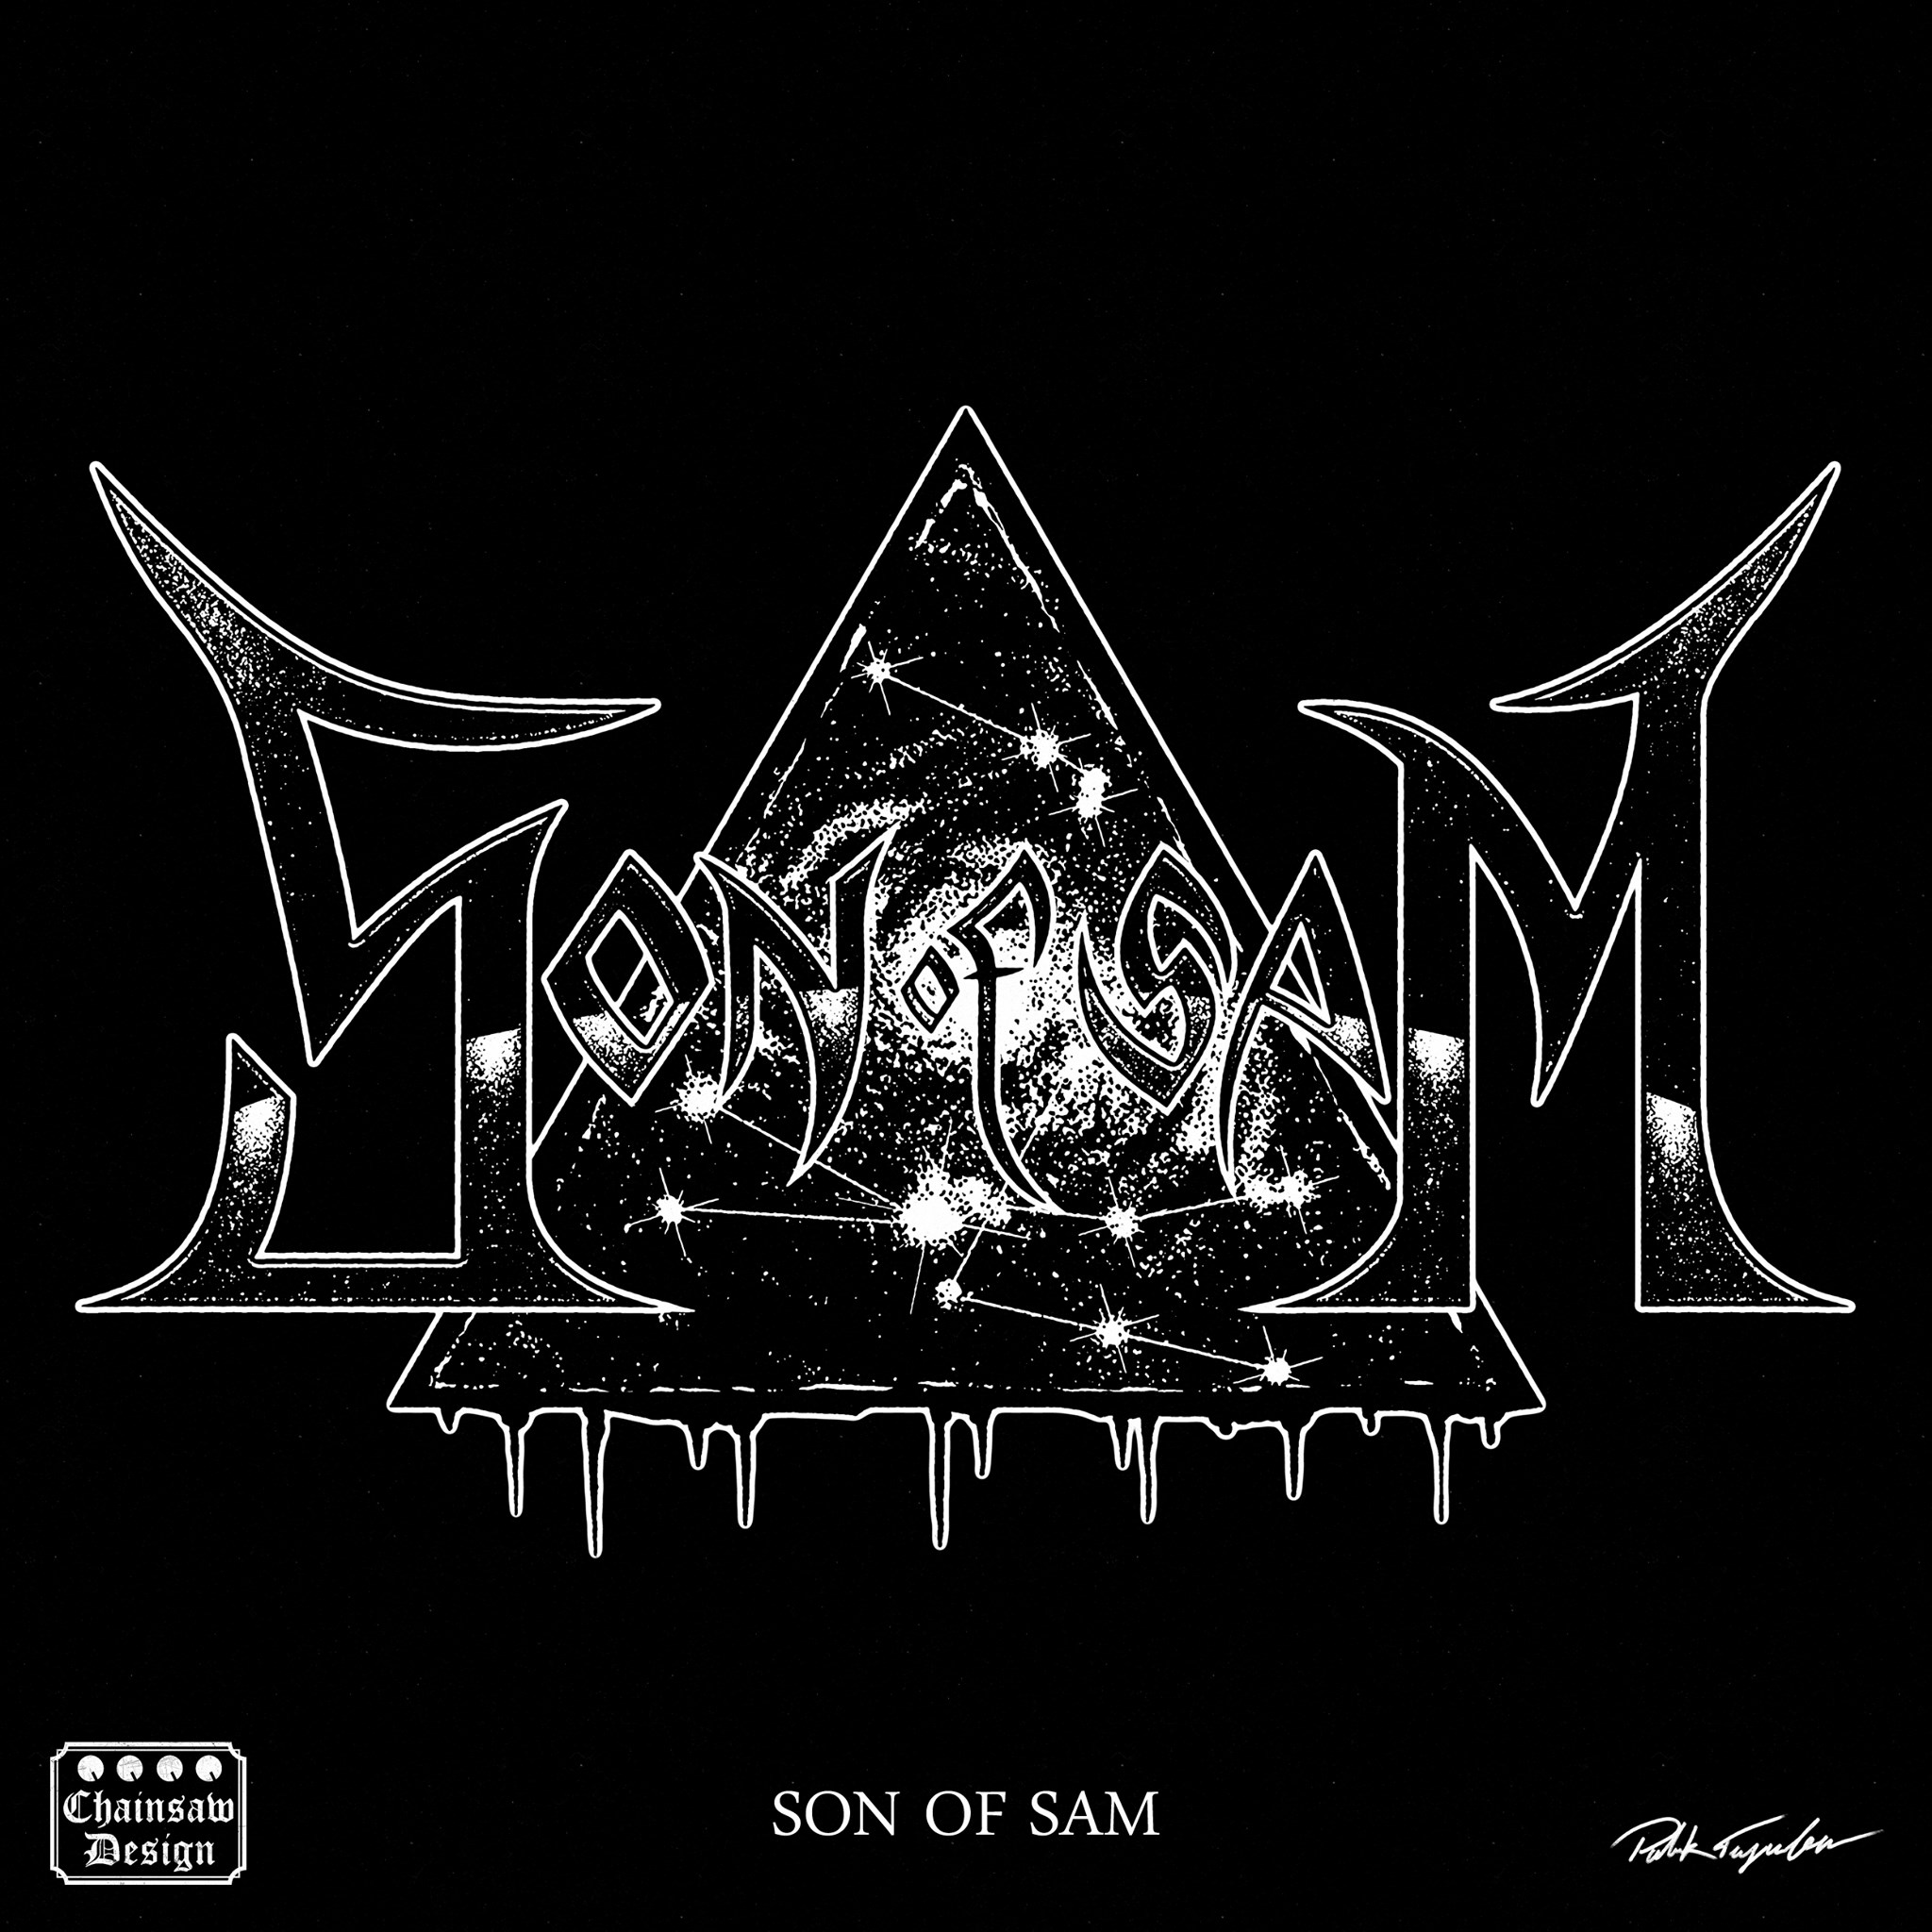 Chainsaw Design Artwork Logo for Son Of Sam. 2020